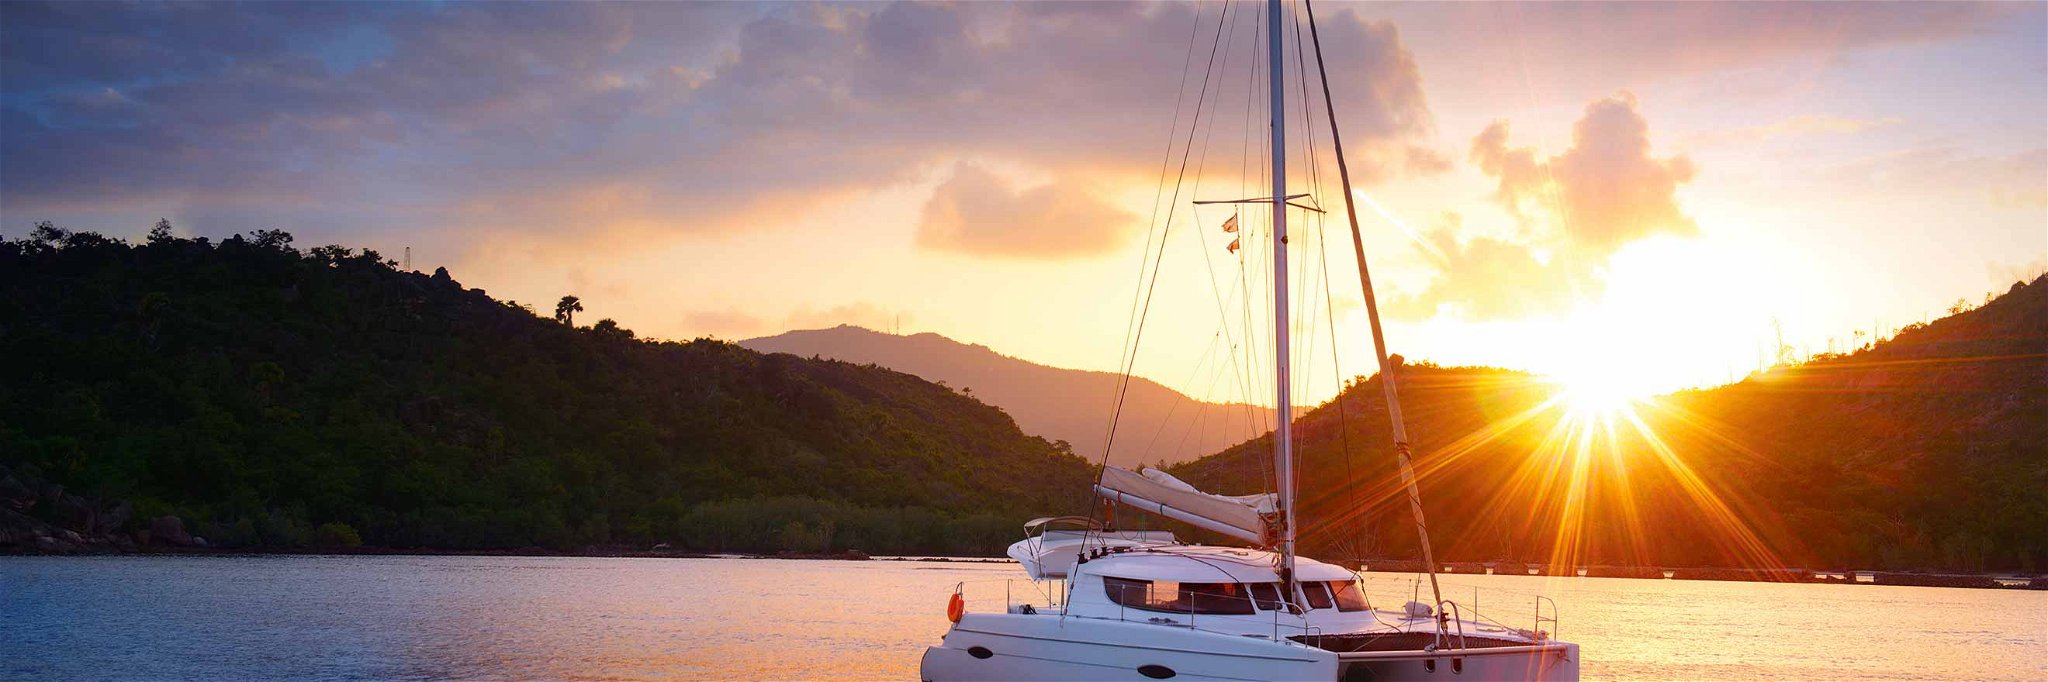 Yacht-Charter ist machbar: Mit dem Schiff in den schönsten Buchten Urlaub zu machen, ist in finanzieller Hinsicht oft leichter erreichbar als gedacht.